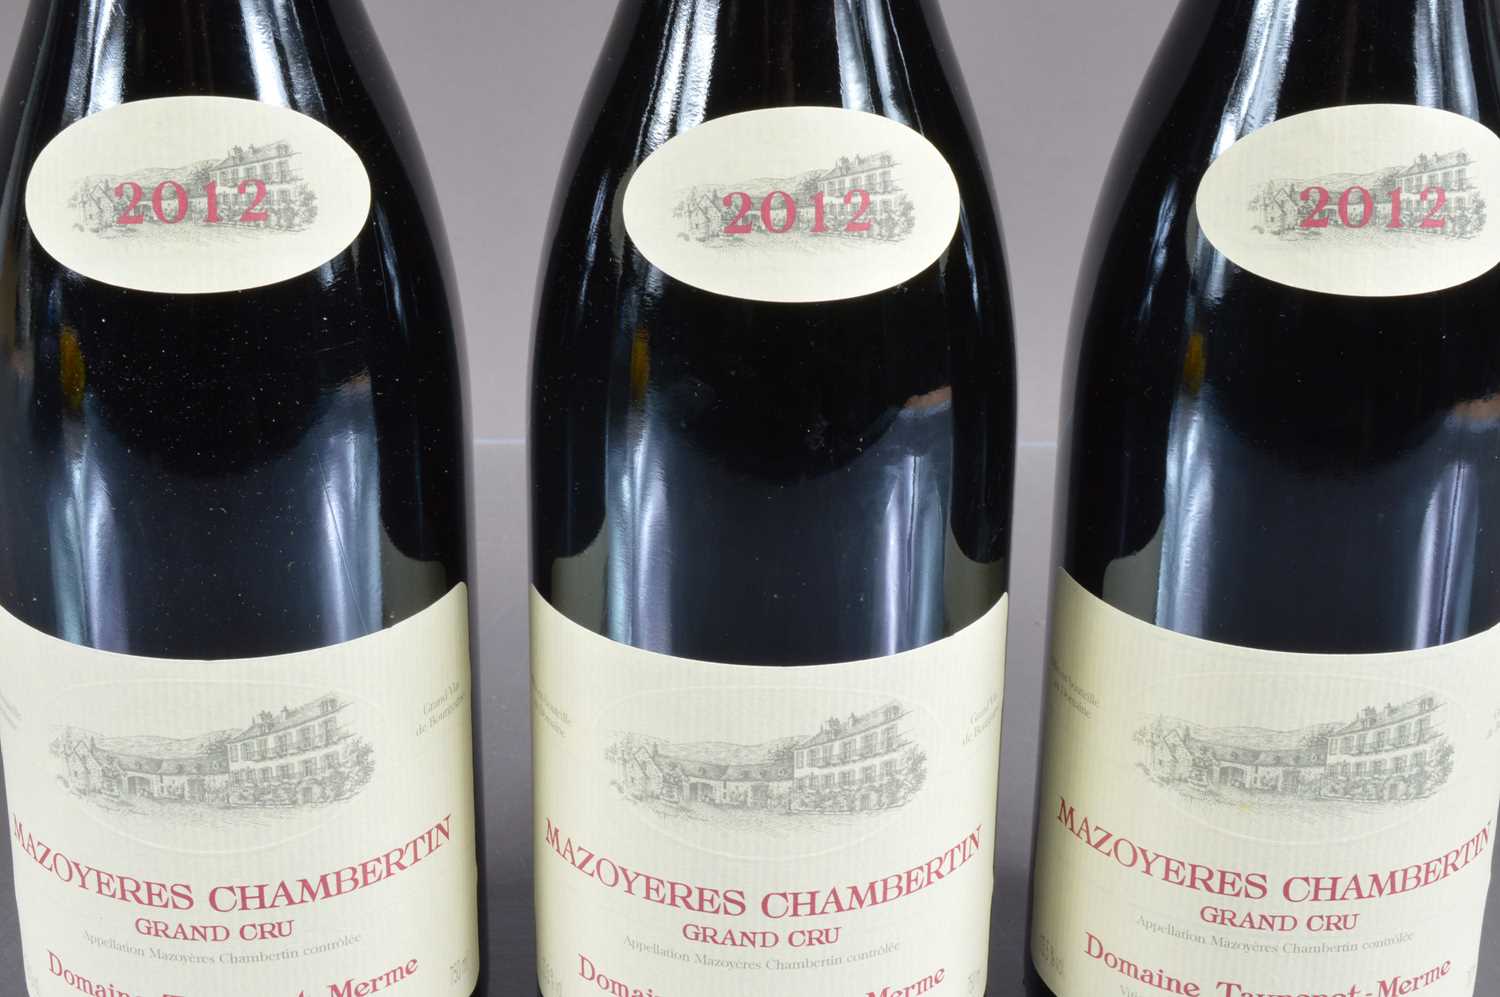 Three bottles of Mazoyeres Chambertin Grand Cru 2012, - Image 2 of 2